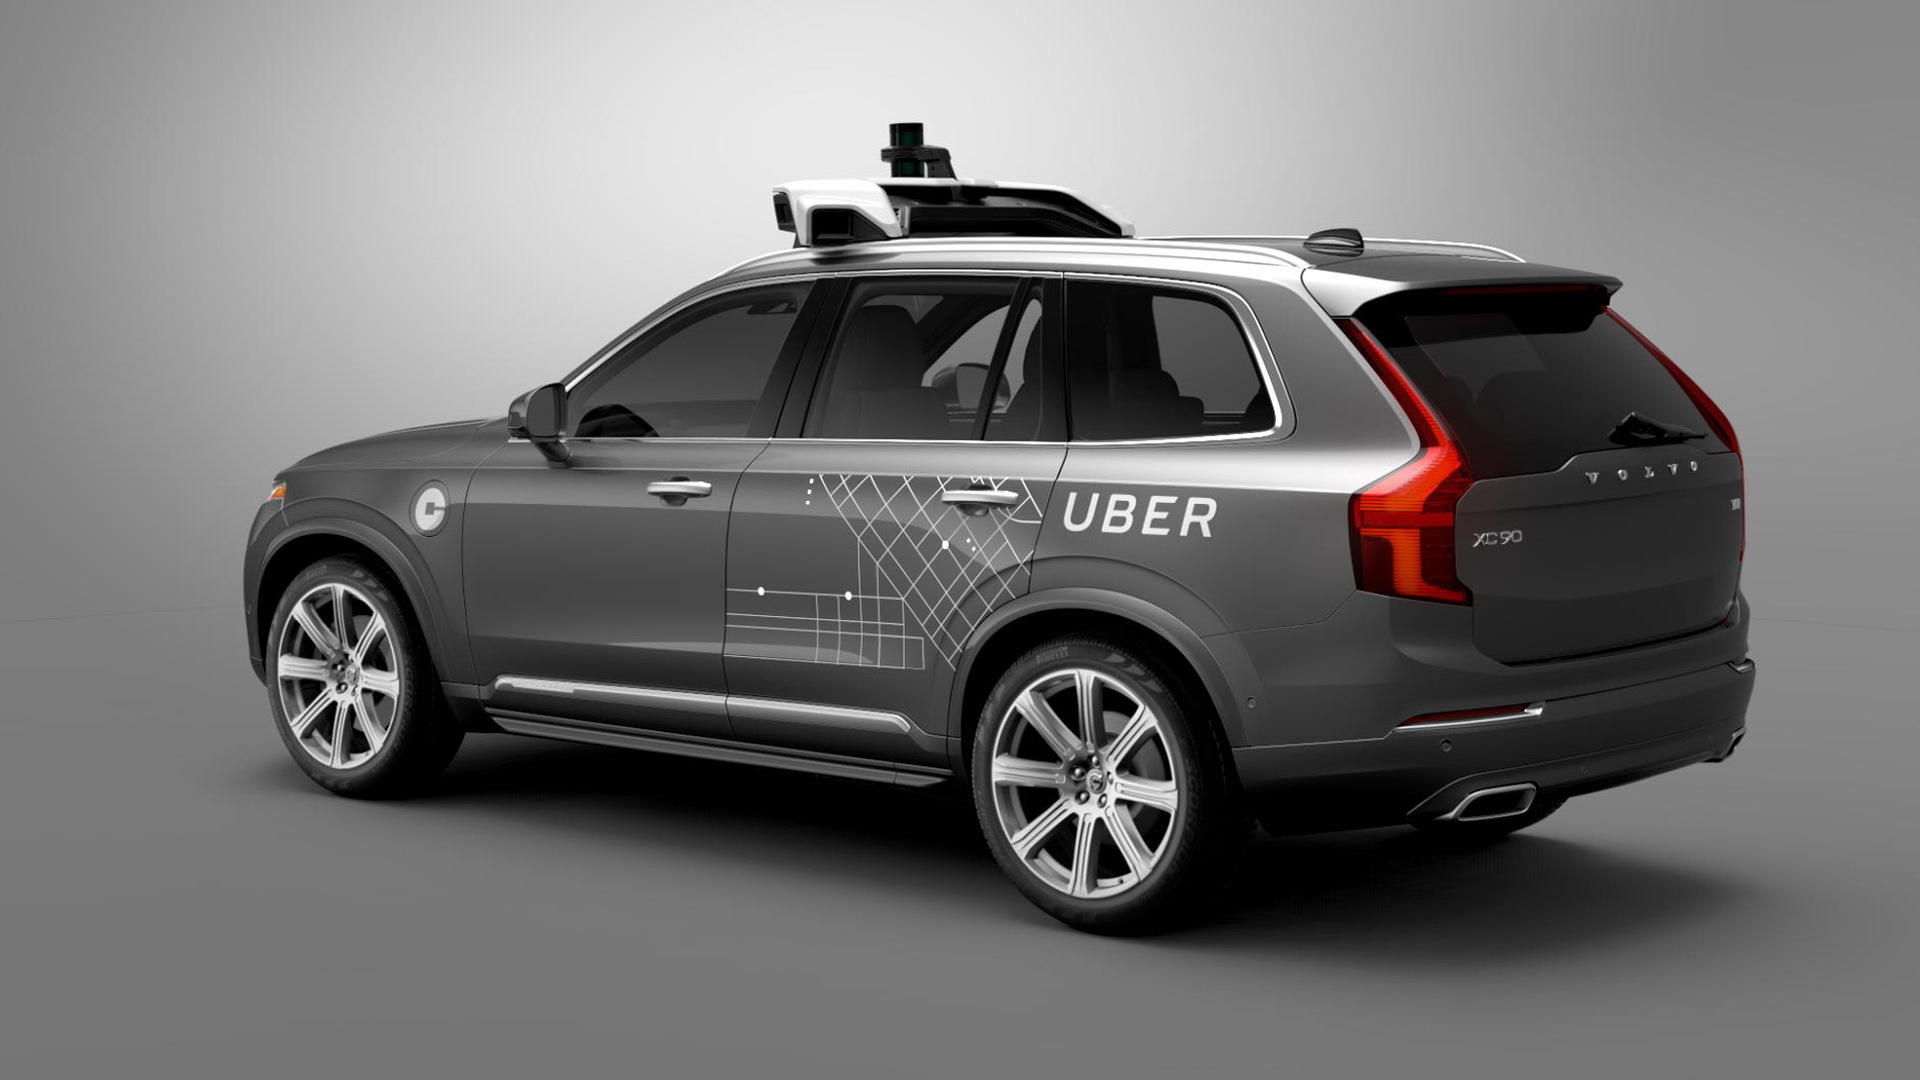 Uber’s Volvo XC90 autonomous car prototype